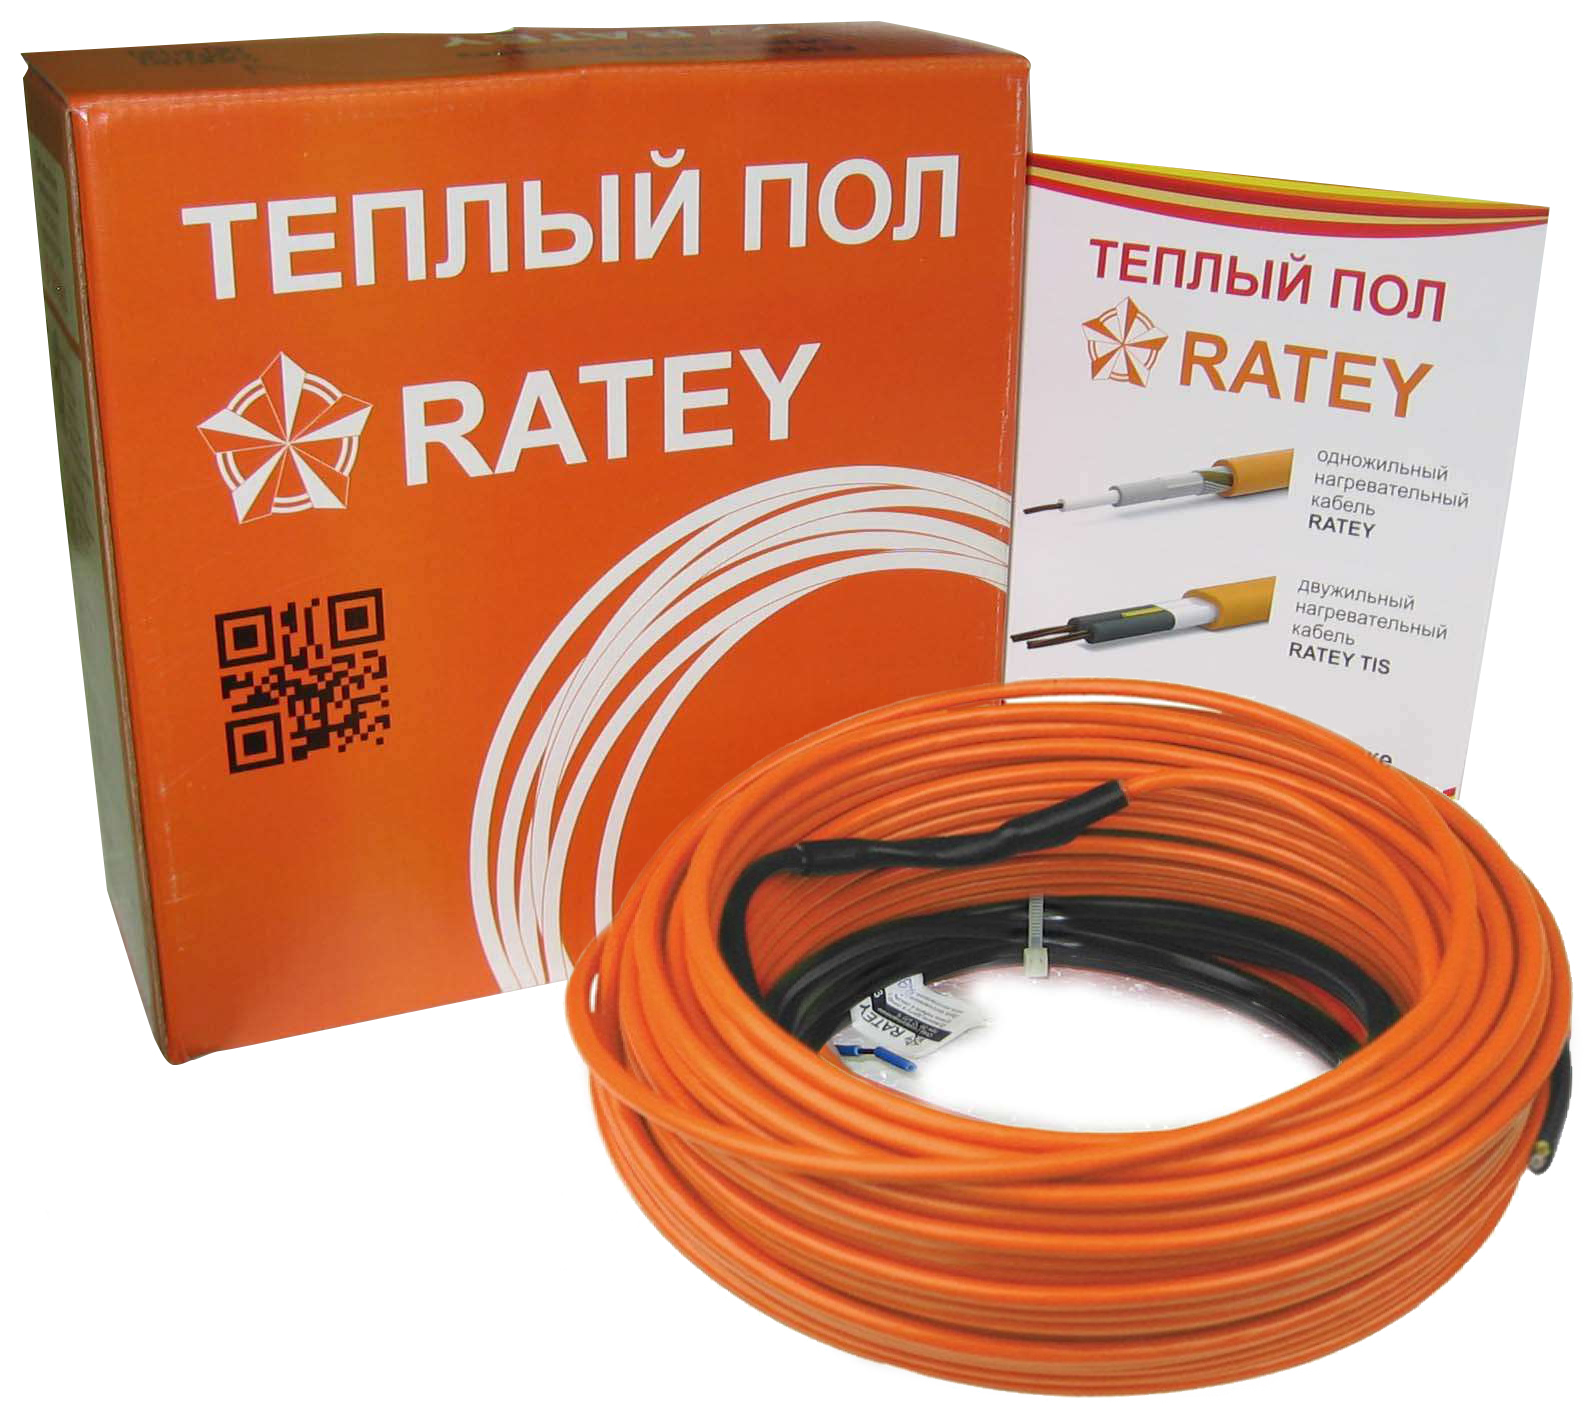 Электрический теплый пол Ratey RD1 0.560 в интернет-магазине, главное фото